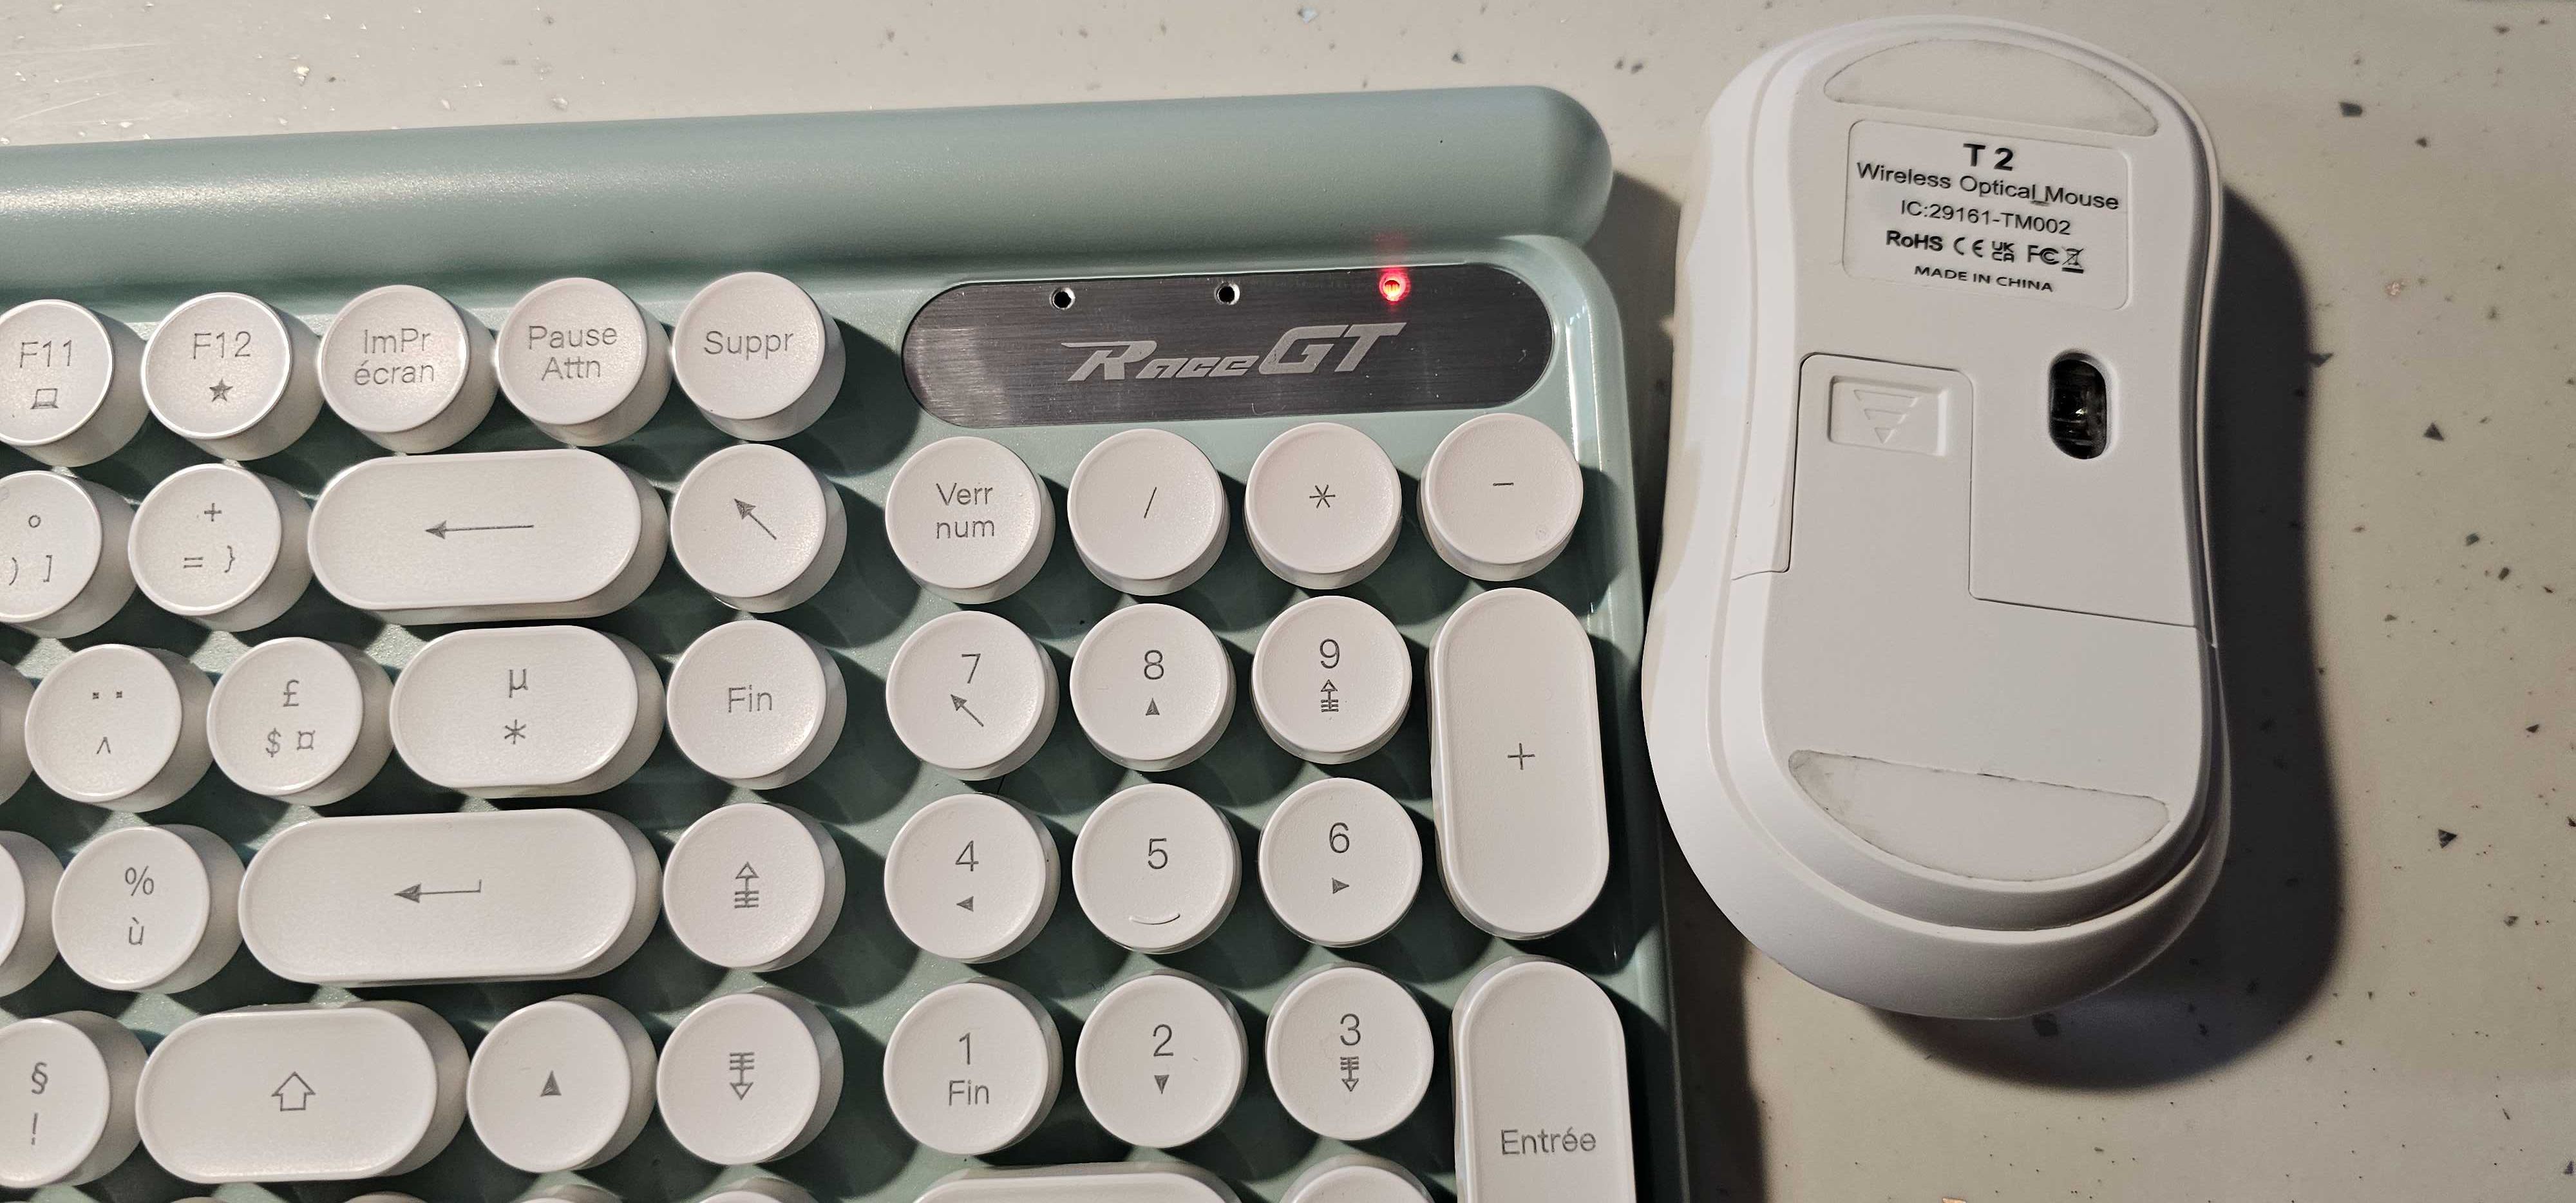 Bezprzewodowy zestaw klawiatura i mysz LT400